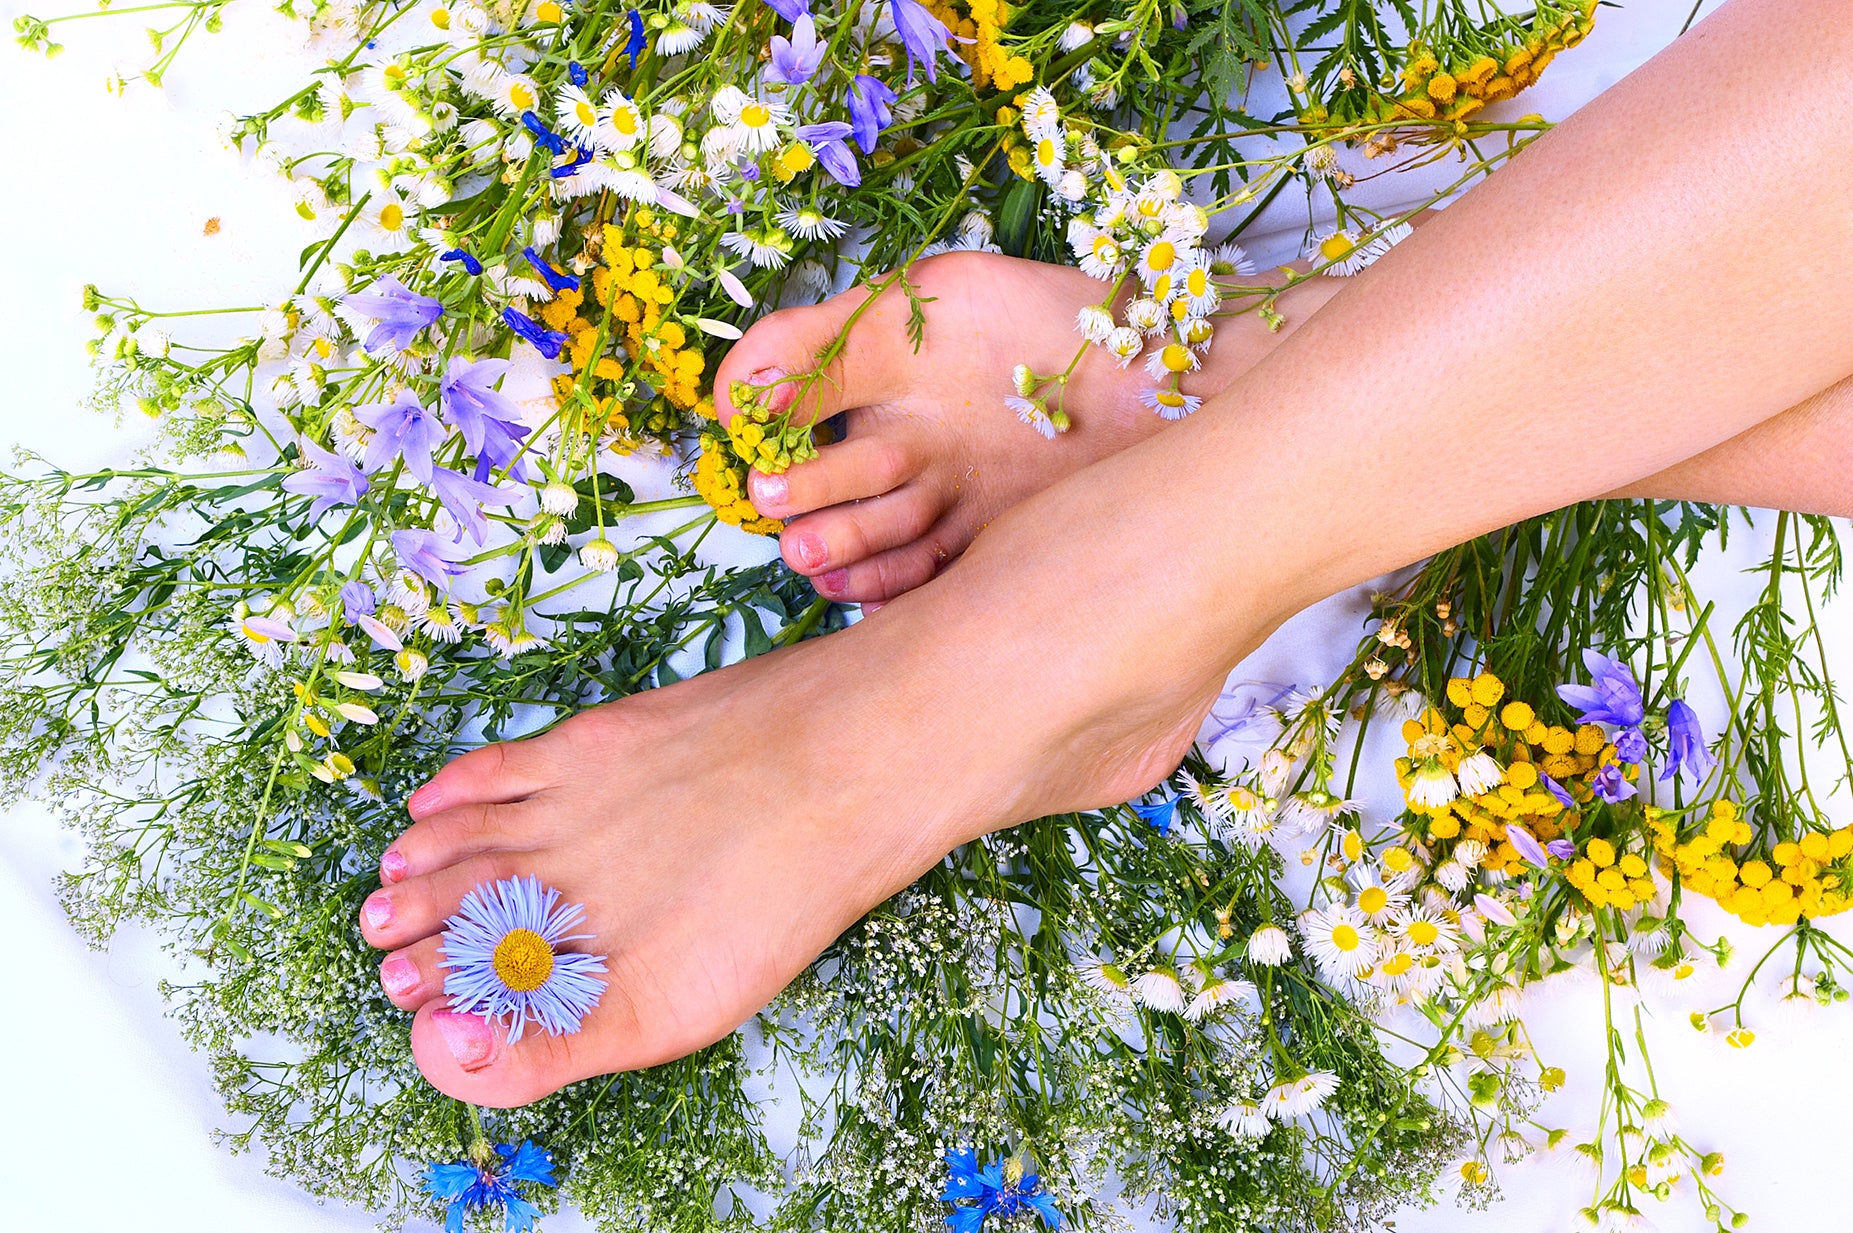 Summer foot